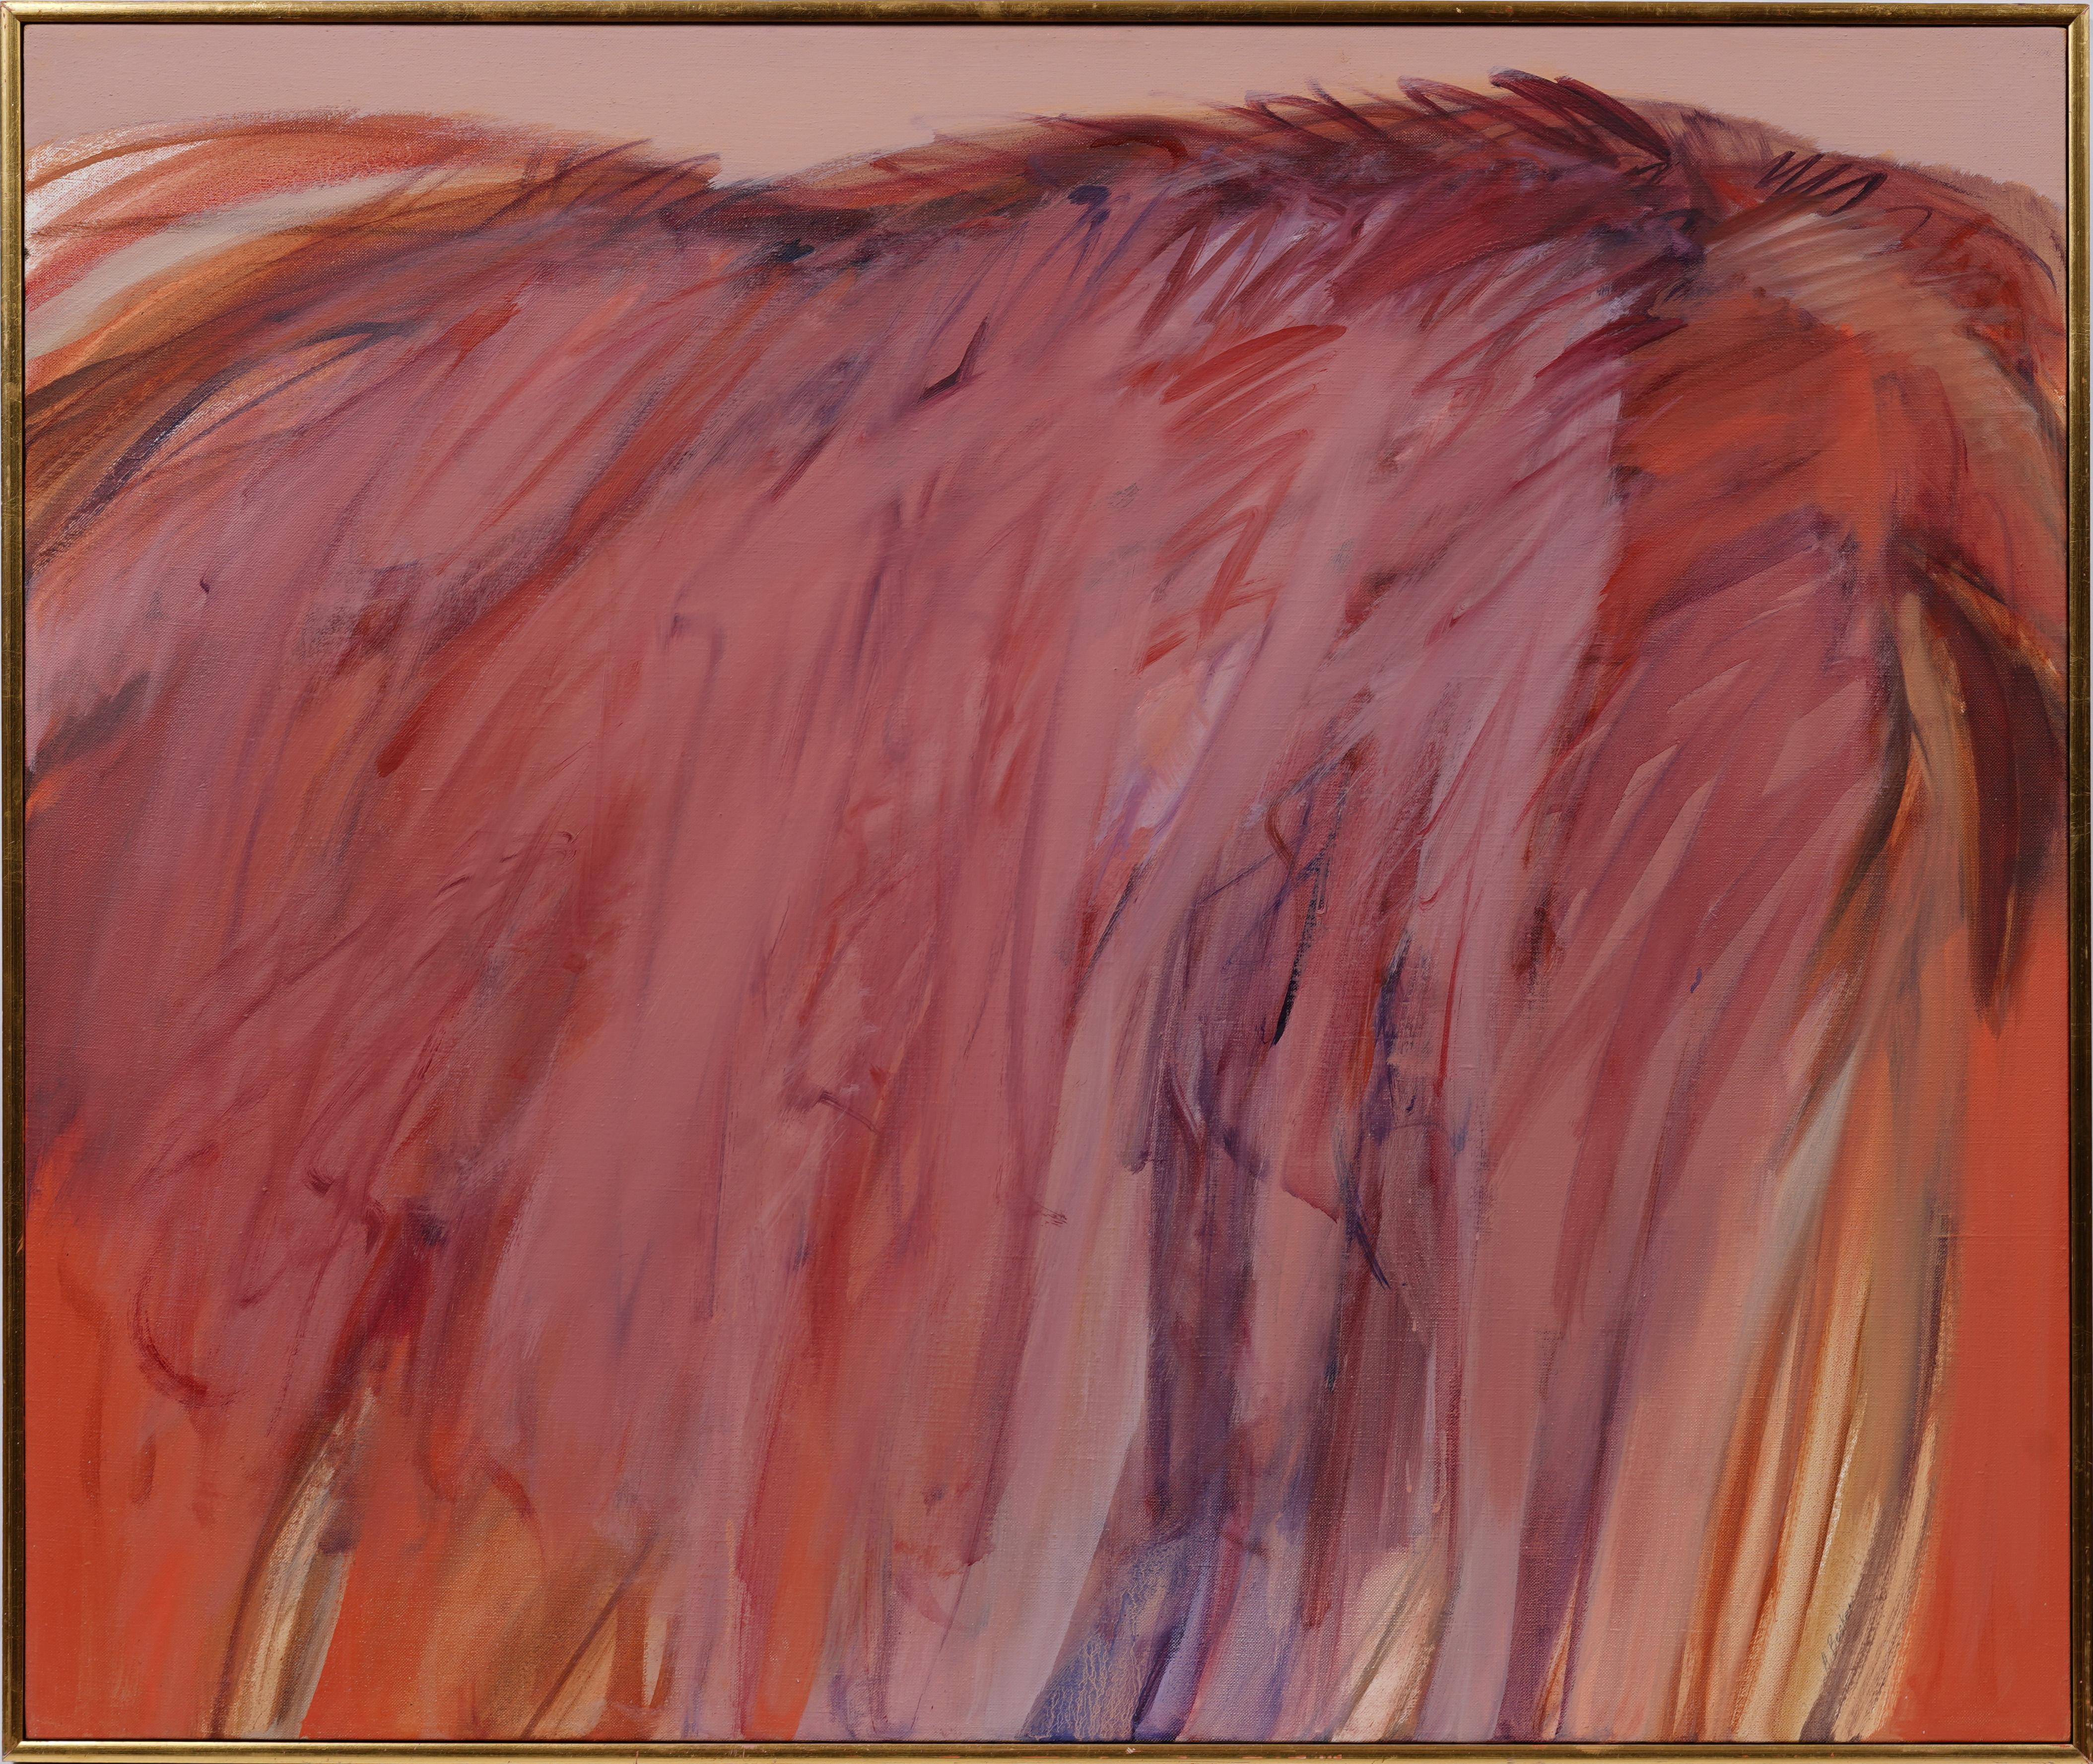 Ancienne peinture expressionniste abstraite américaine moderniste signée de la femme artiste - Painting de Adele Becker